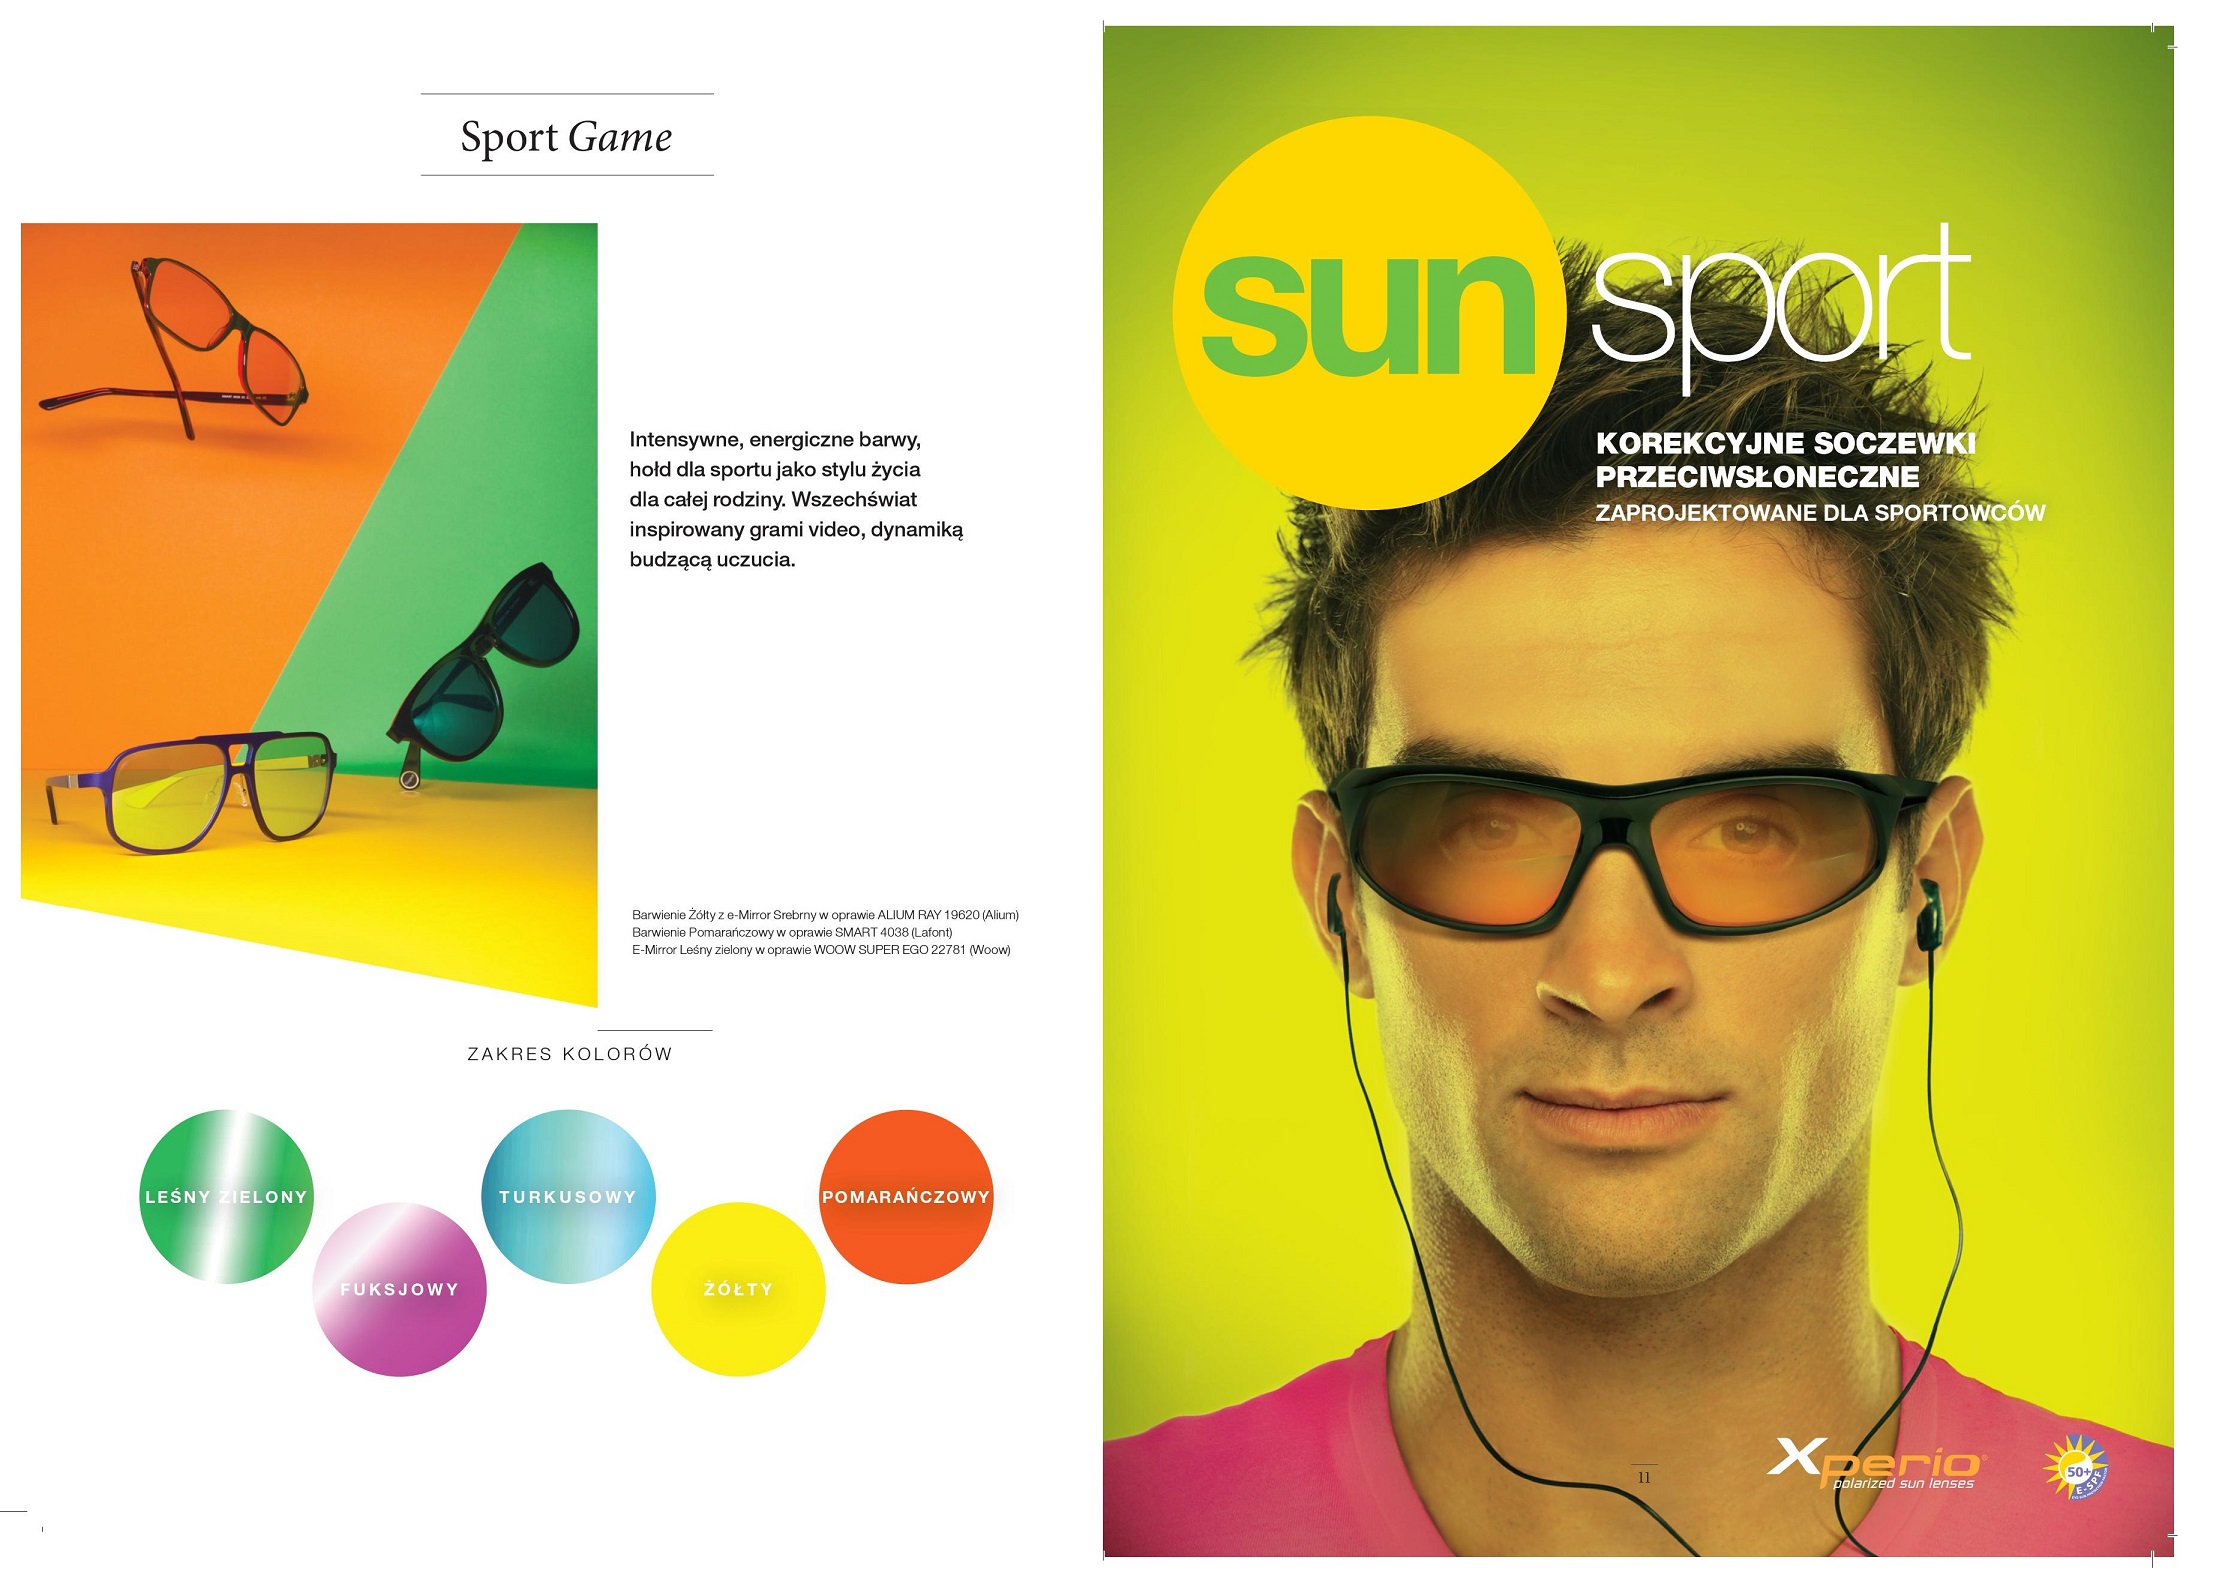 sun sports